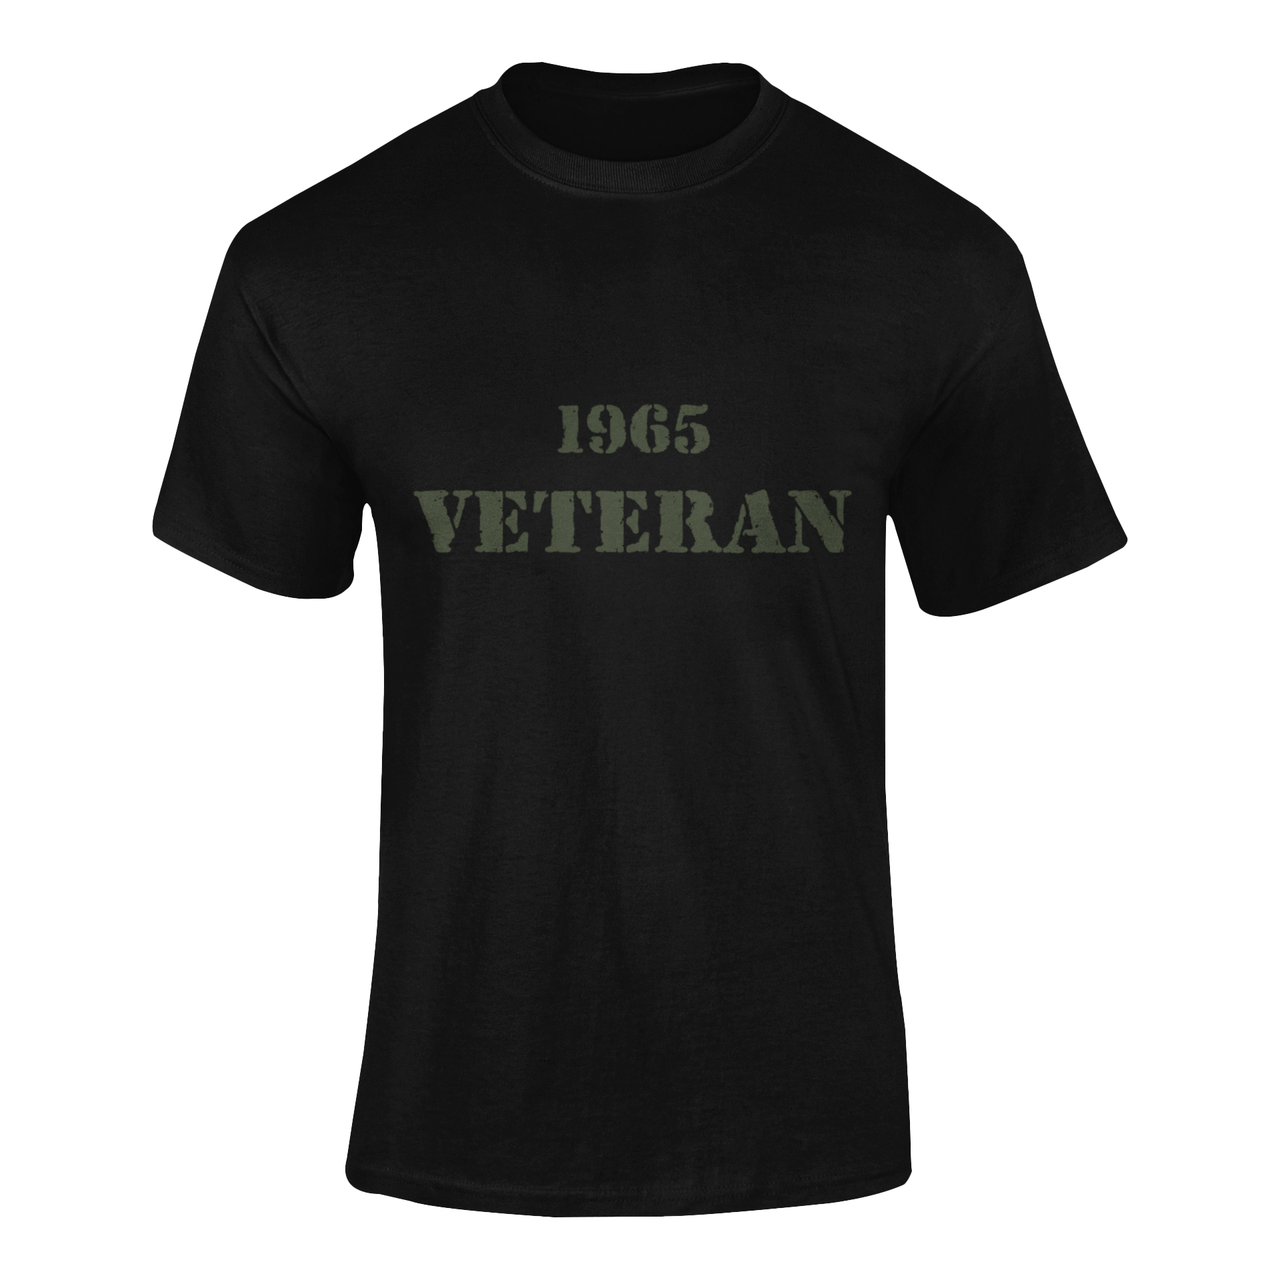 Military T-shirt - 1965 Veteran (Men)